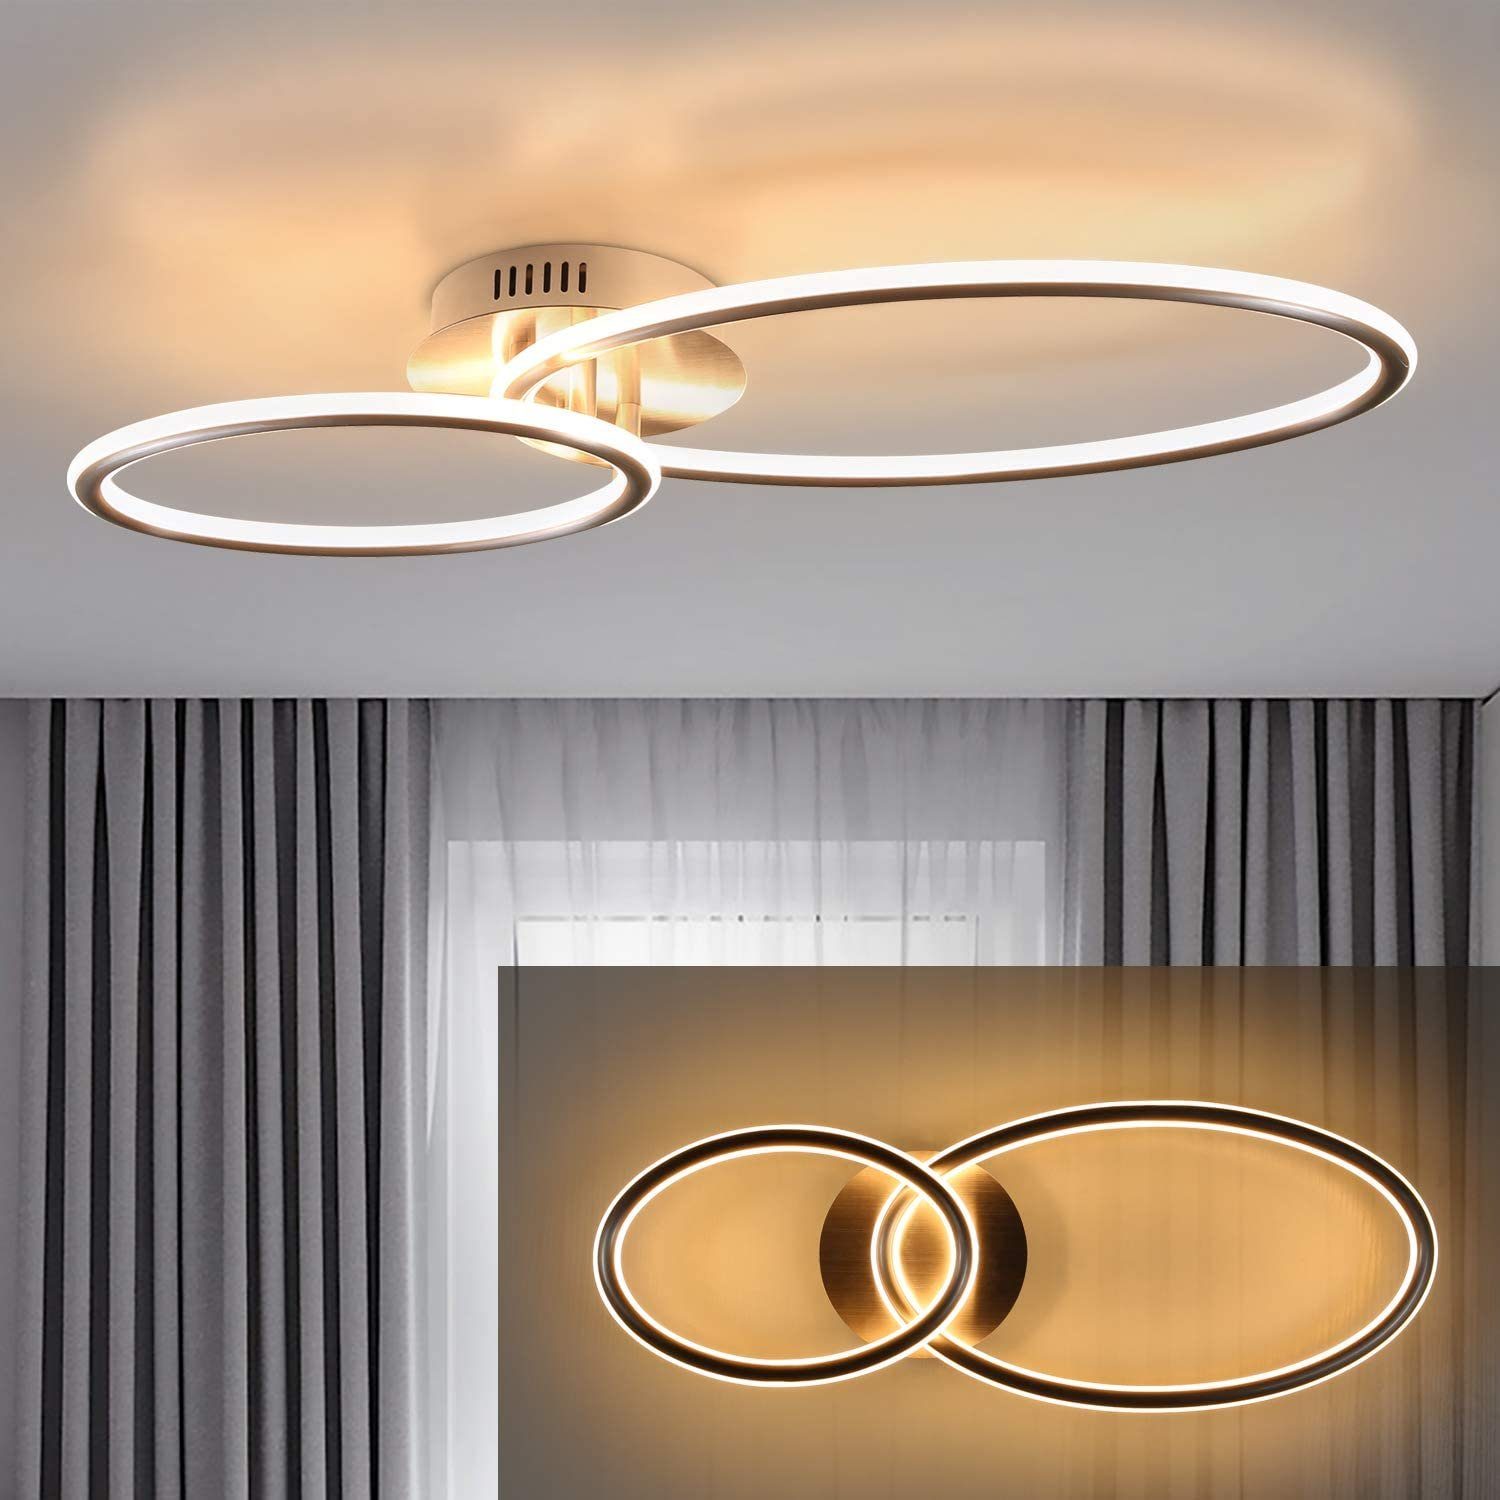 Design LED Decken Lampen mit Lautsprecher Wohn Schlaf Zimmer Flur Beleuchtung 